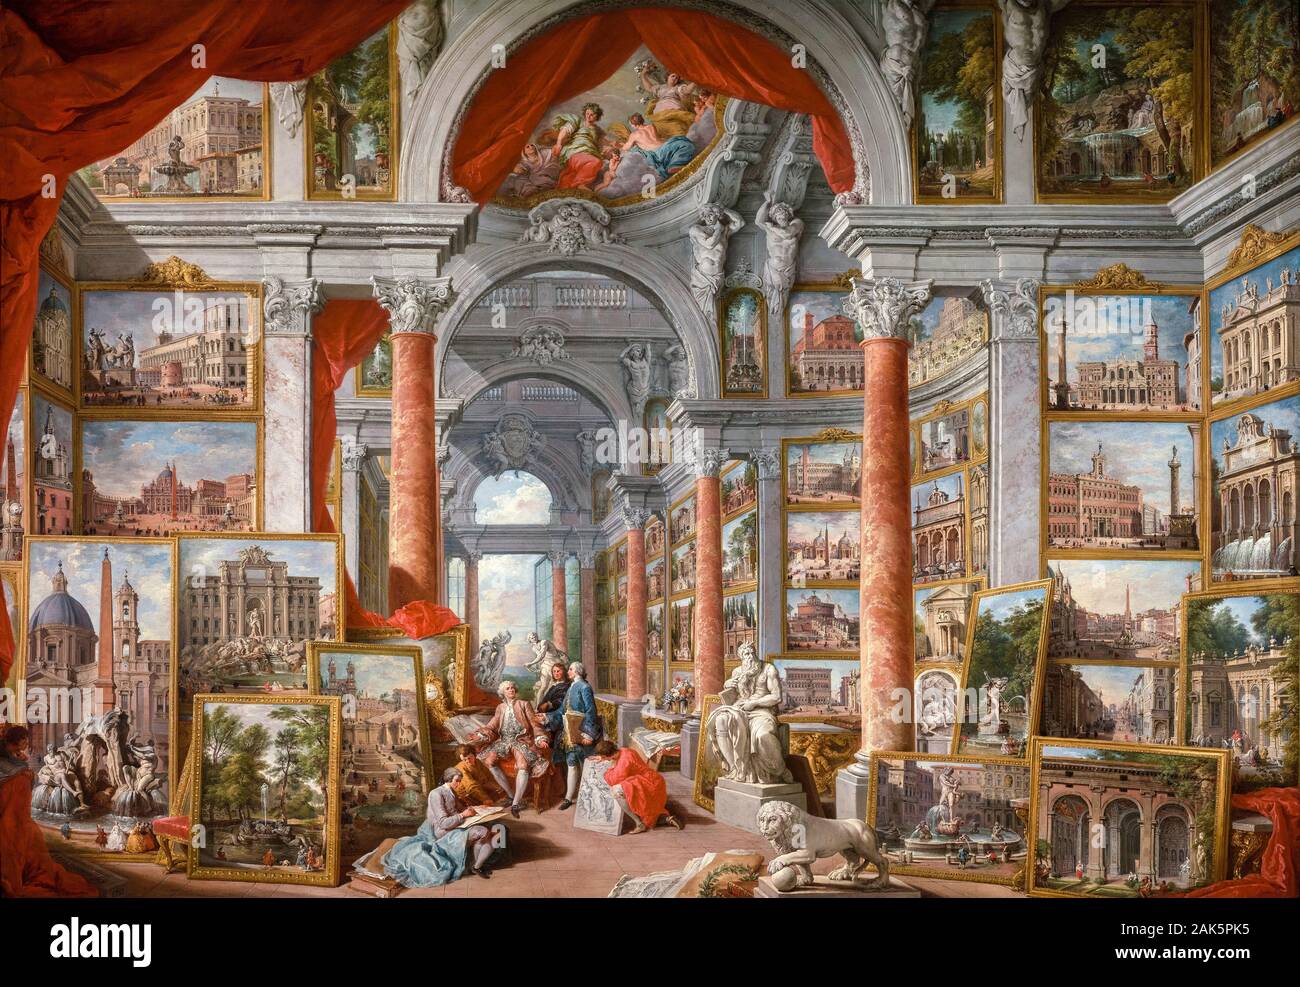 Giovanni Paolo Panini, La Galería de Imágenes con vistas de la Roma moderna, pintura, 1757 Foto de stock